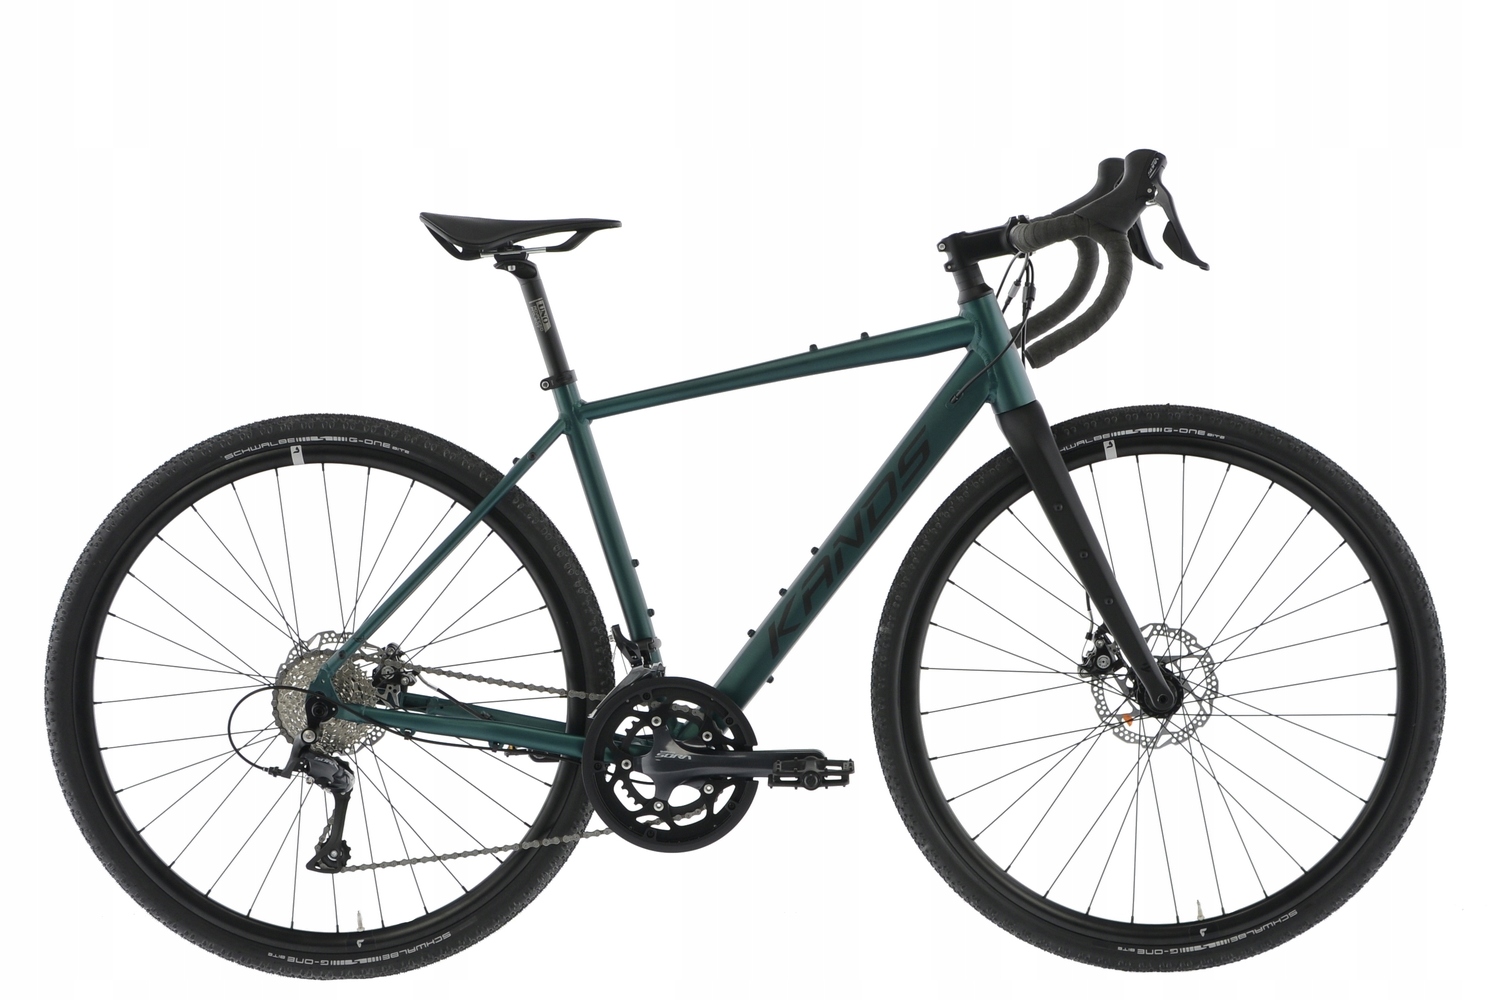 Rower Gravel Kands 28 TORO r49cm zielony SORA doskonały rower w super cenie